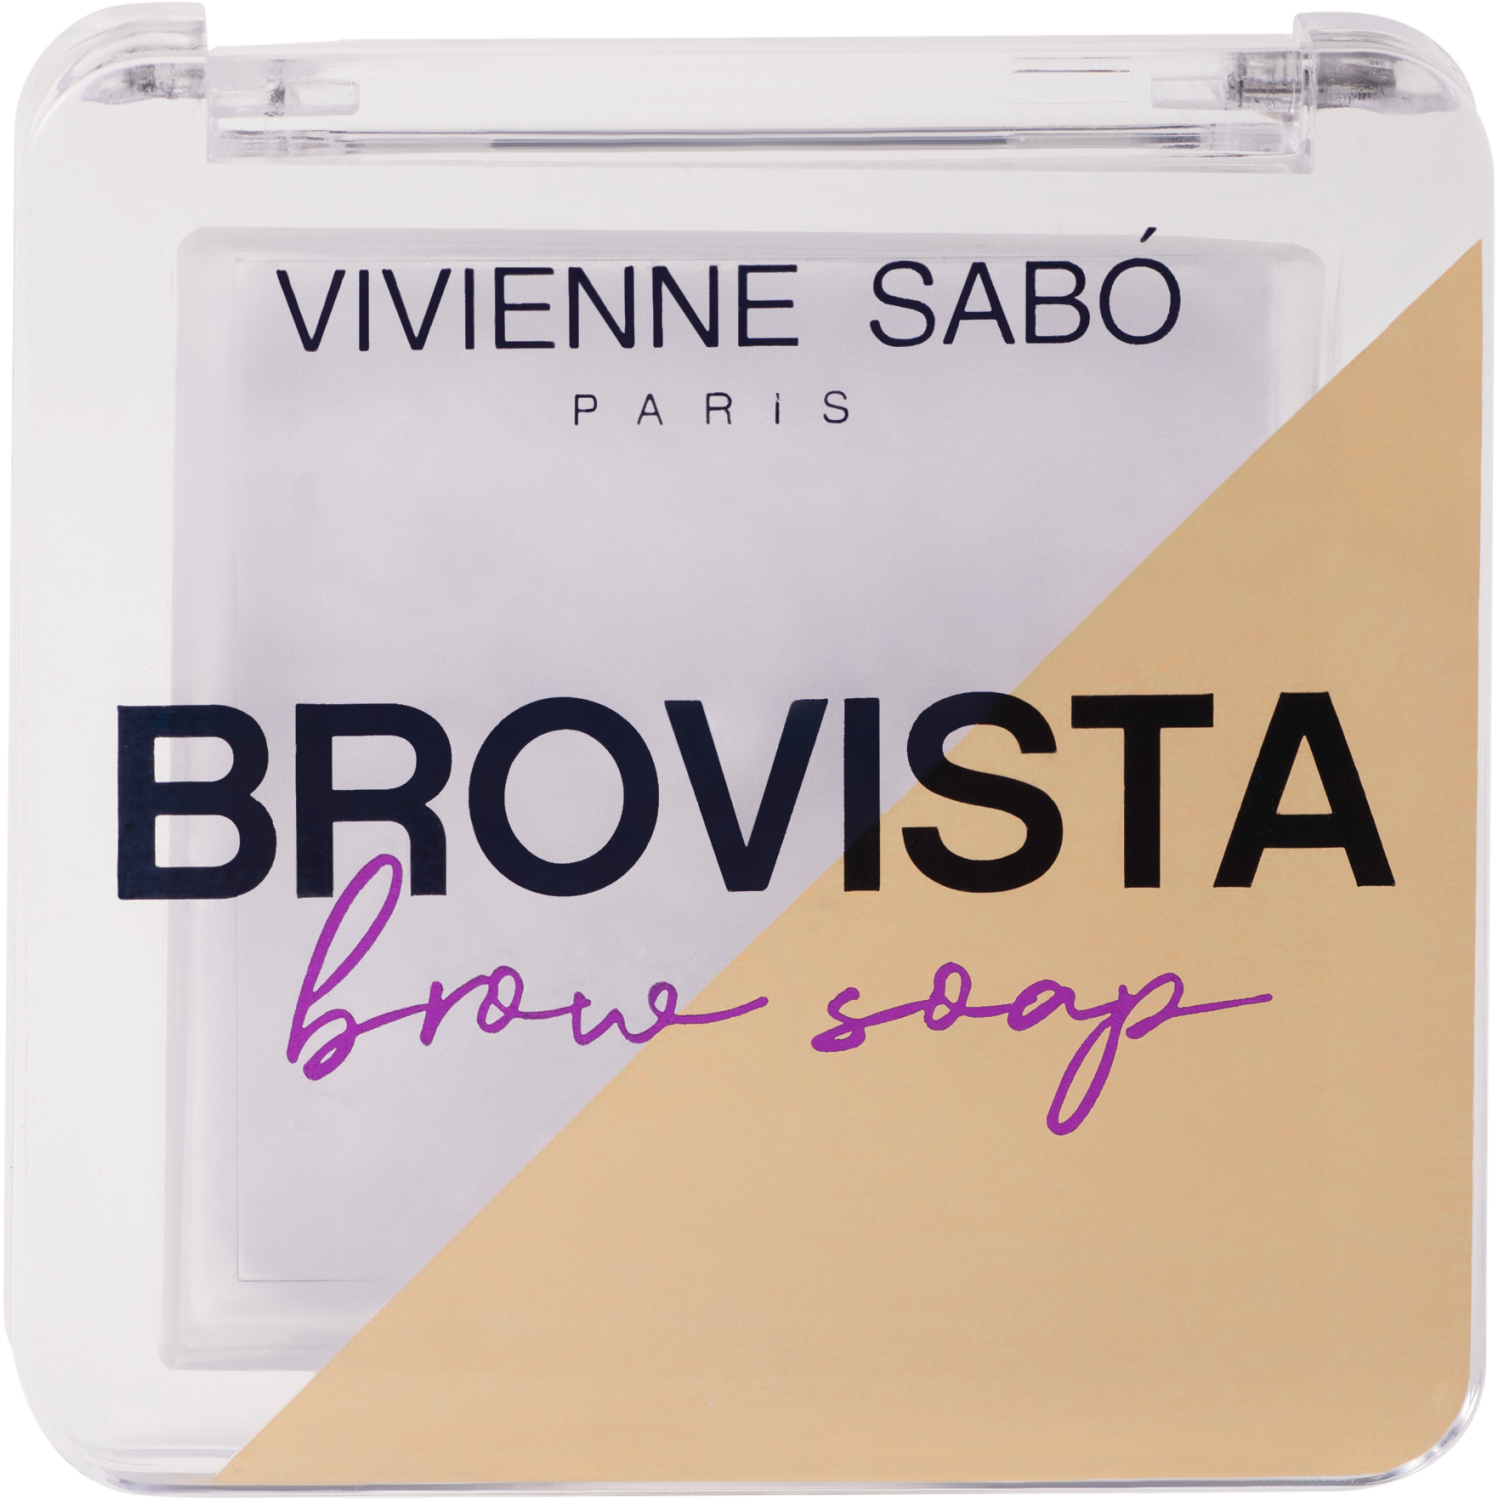 Фиксатор для бровей Vivienne Sabo Brovista brow soap, эффект ламинирования бровей, прозрачно-белесый, 3гр. гель фиксатор для бровей brow fixing